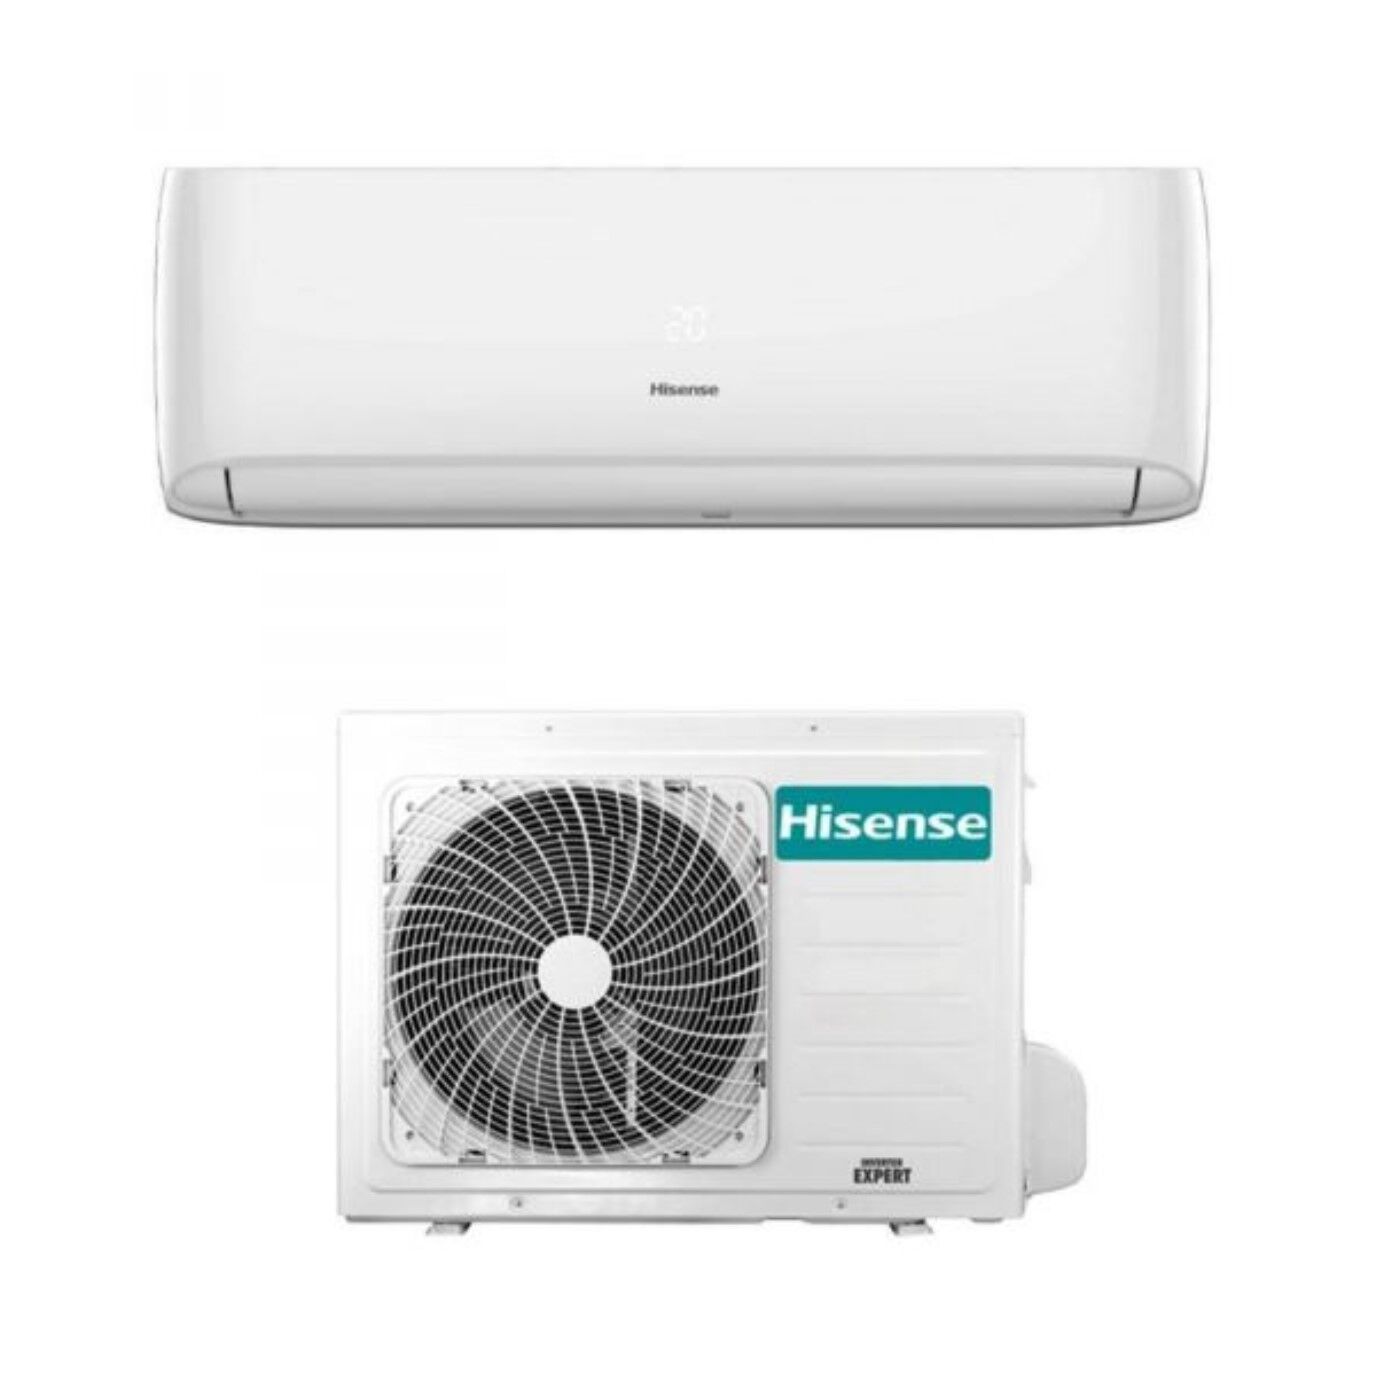 climatizzatore condizionatore hisense inverter serie easy smart 24000 btu ca70bt1ag + ca70bt1aw r-32 wi-fi optional - novità